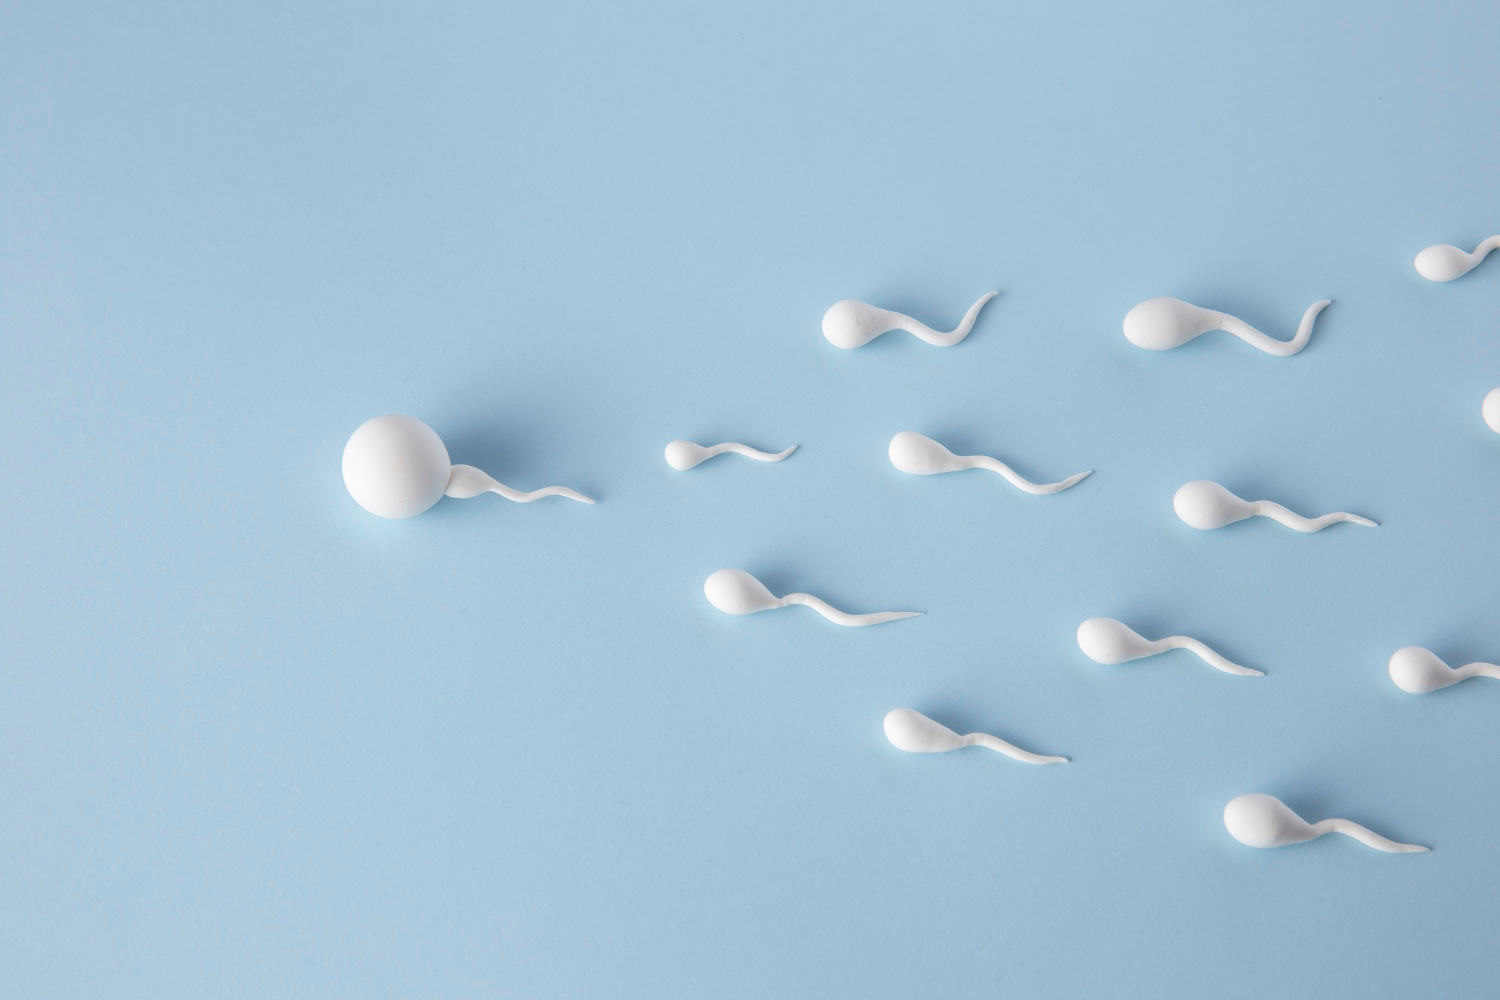 El microbioma del semen podría influir en la salud y fertilidad de los espermatozoides